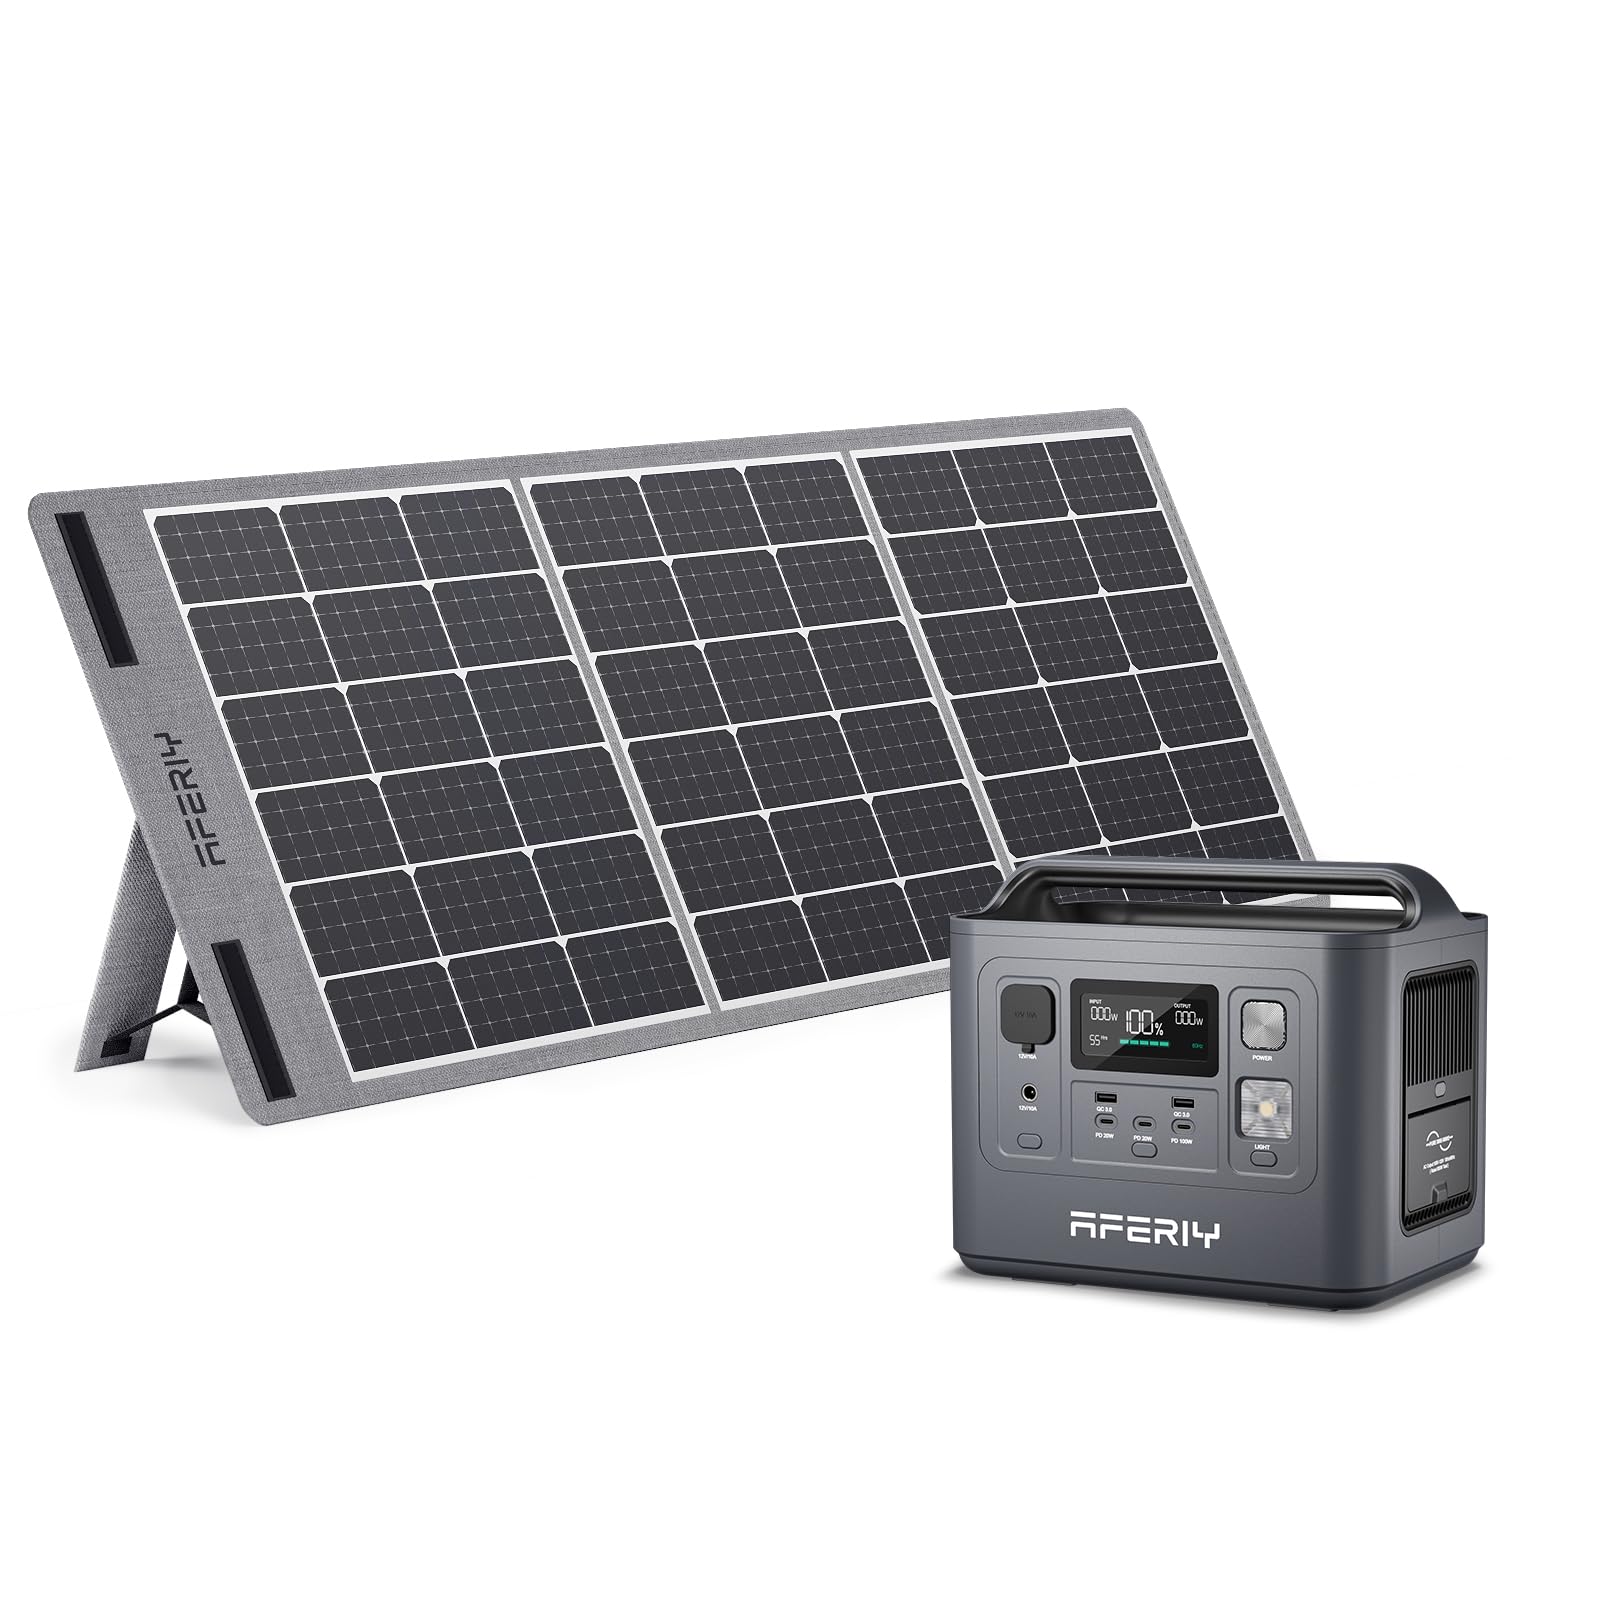 AFERIY Solar Generator P010 800Wポータブル電源 100W ソーラーパネル セット